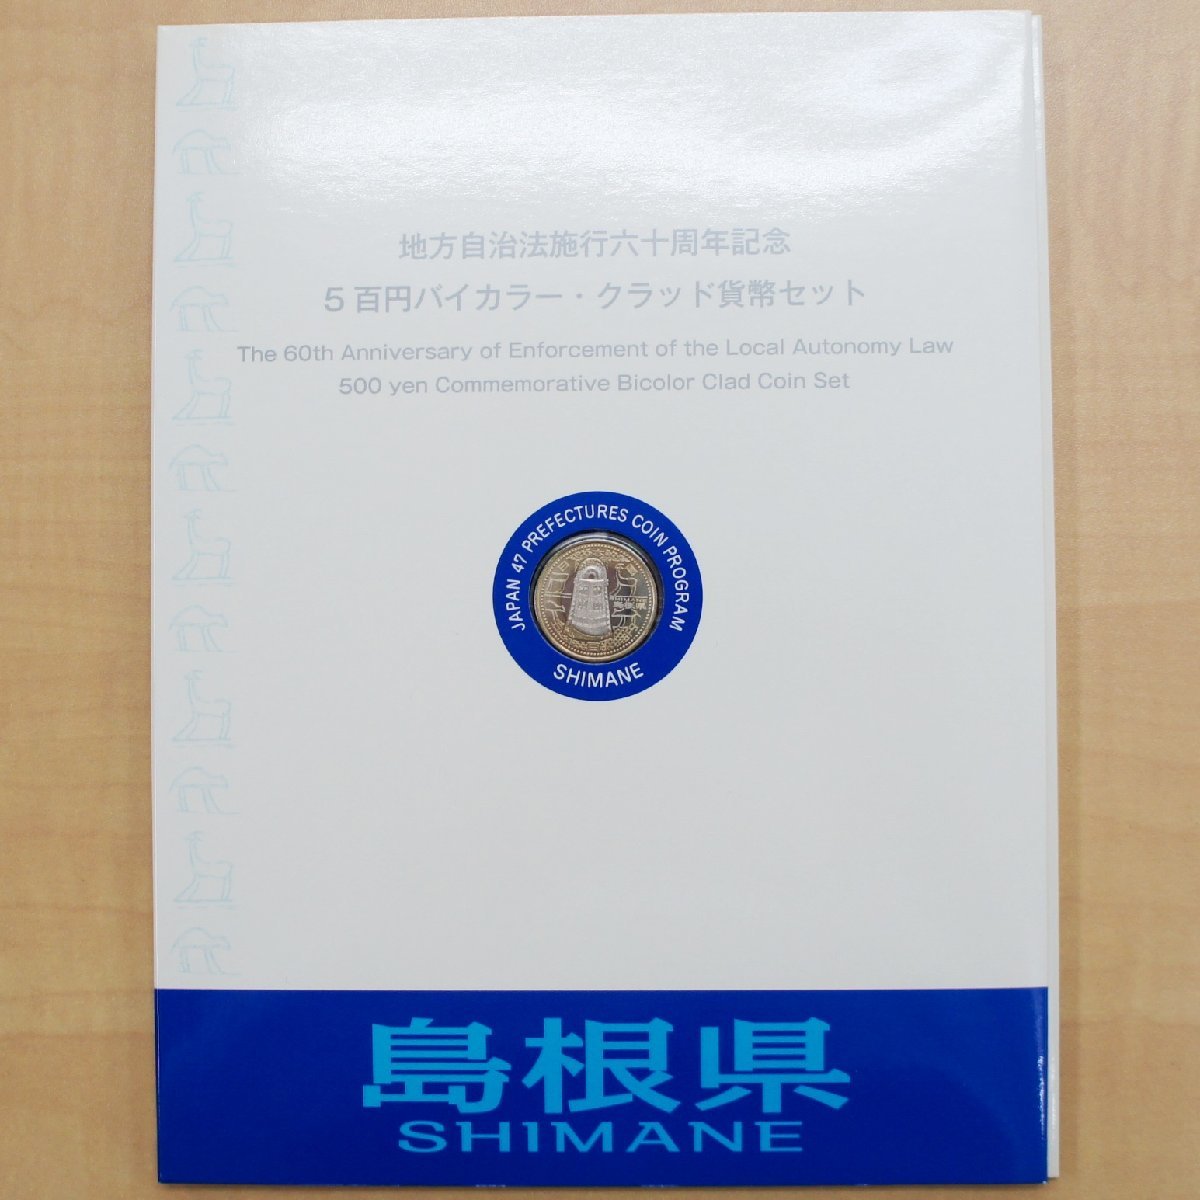 BOOK型【地方自治法施行60周年記念 500円 バイカラークラッド貨幣